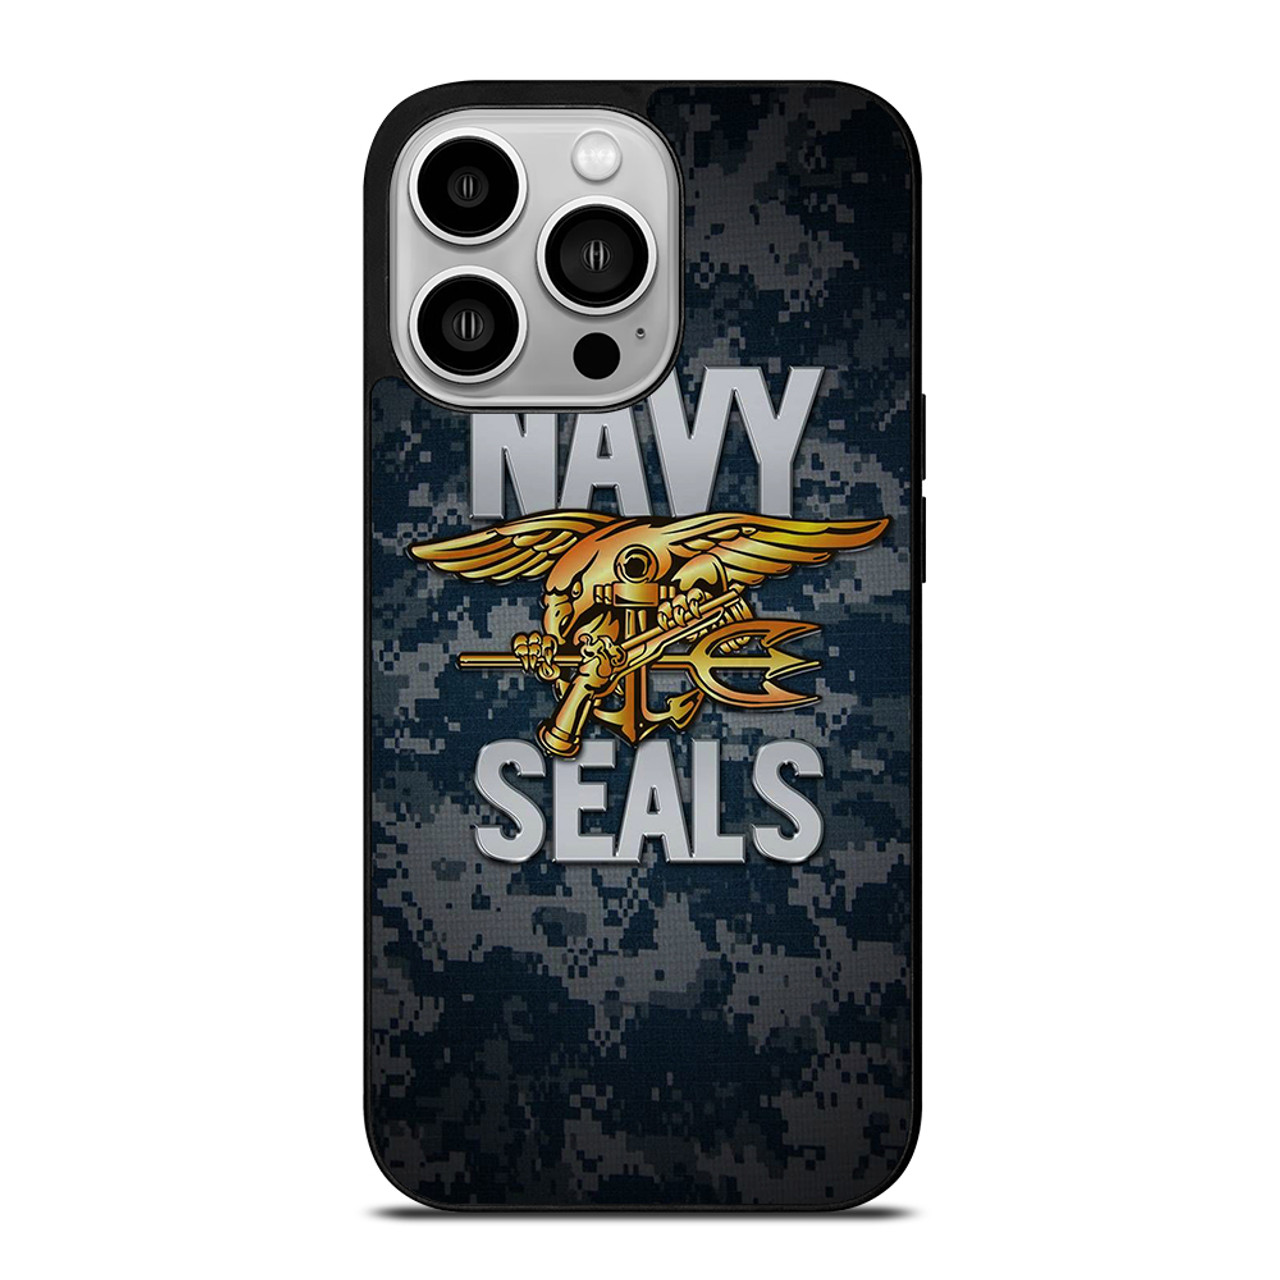 navy seals iphone wallpaper